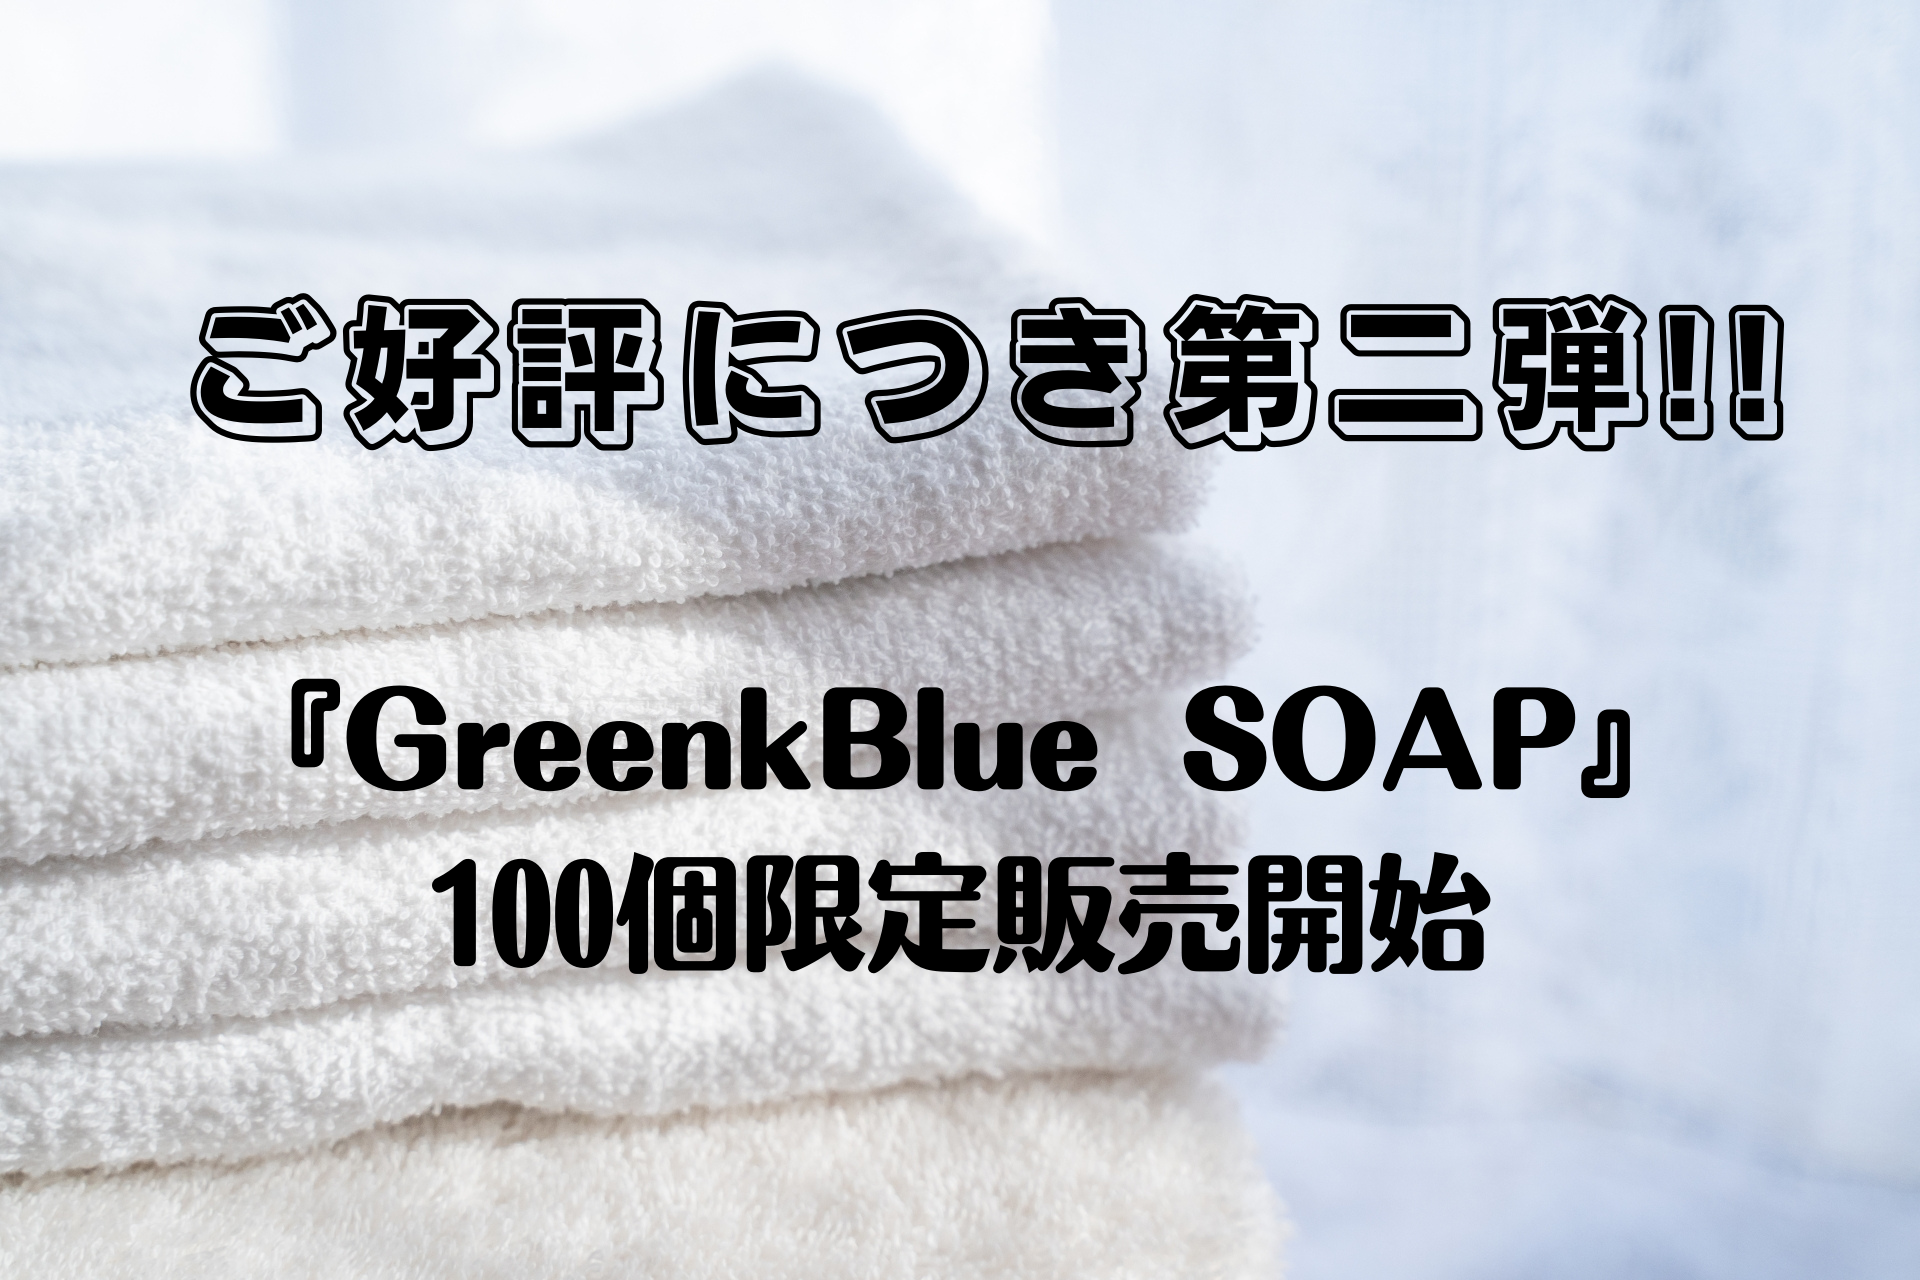 ご好評につき第二弾!!『GreenkBlue SOAP』100個限定販売開始★